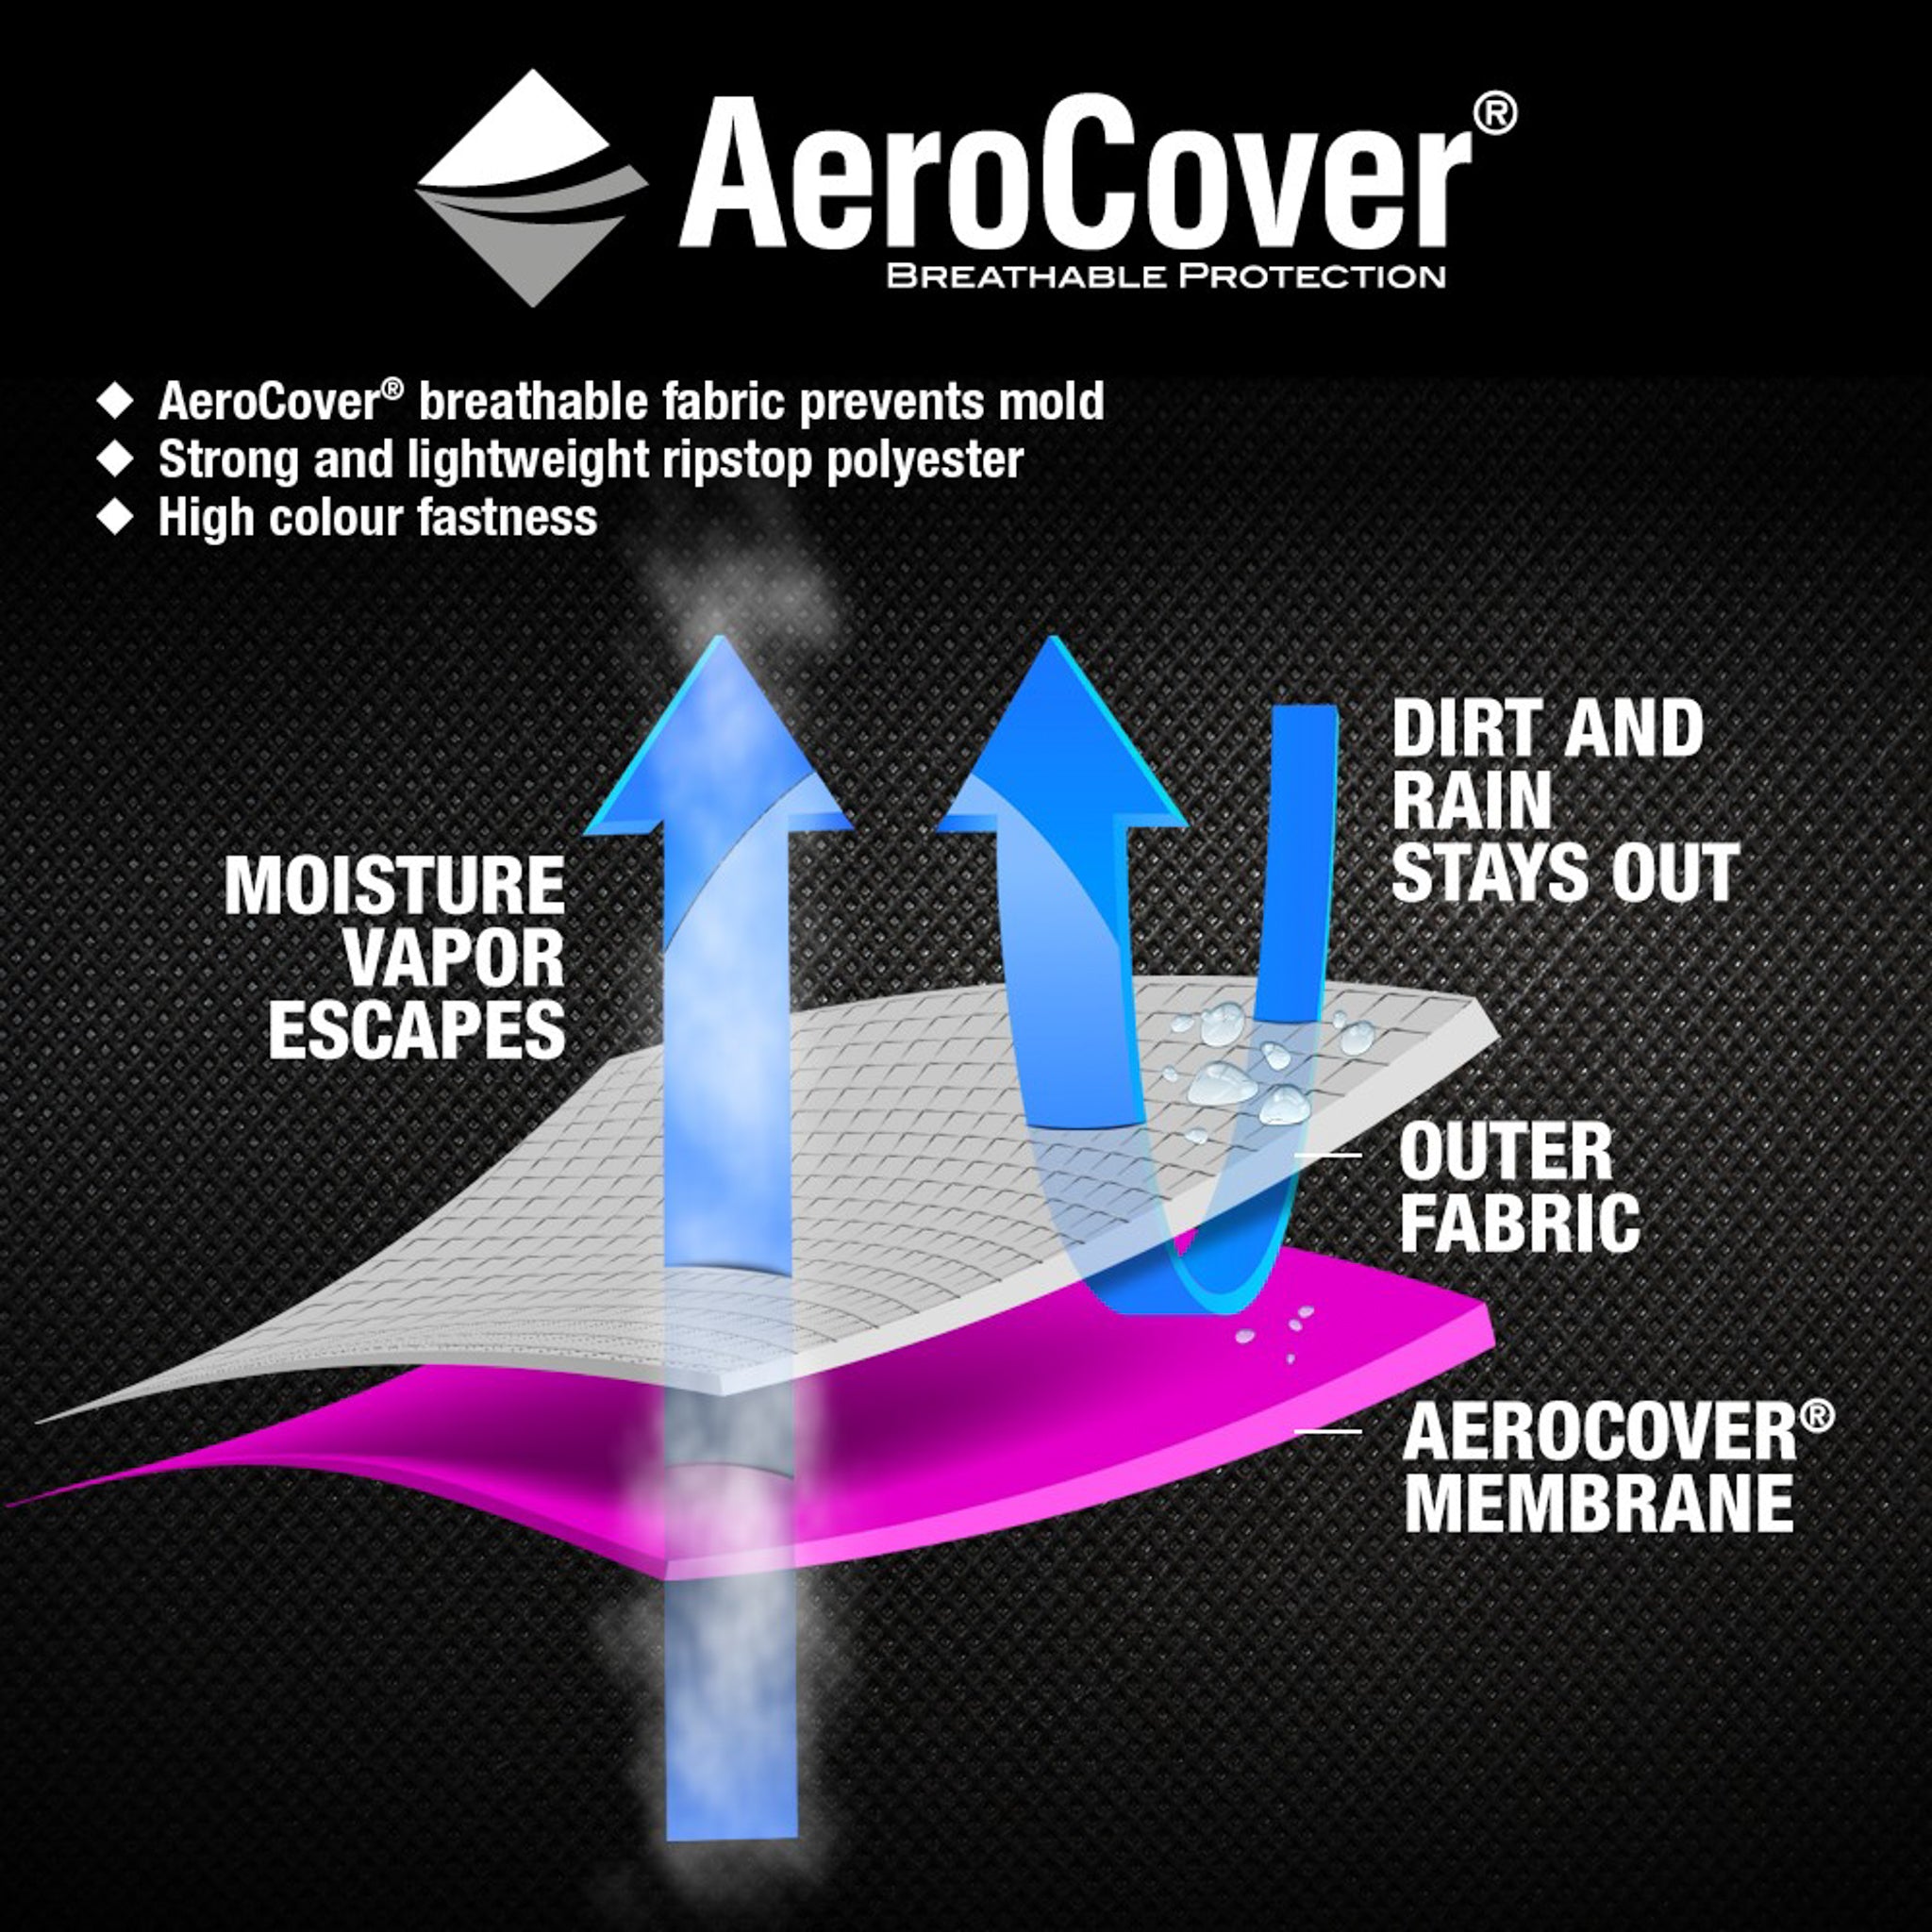 AeroCover - Garden Set Square Cover 130 x 130 x 85cm high